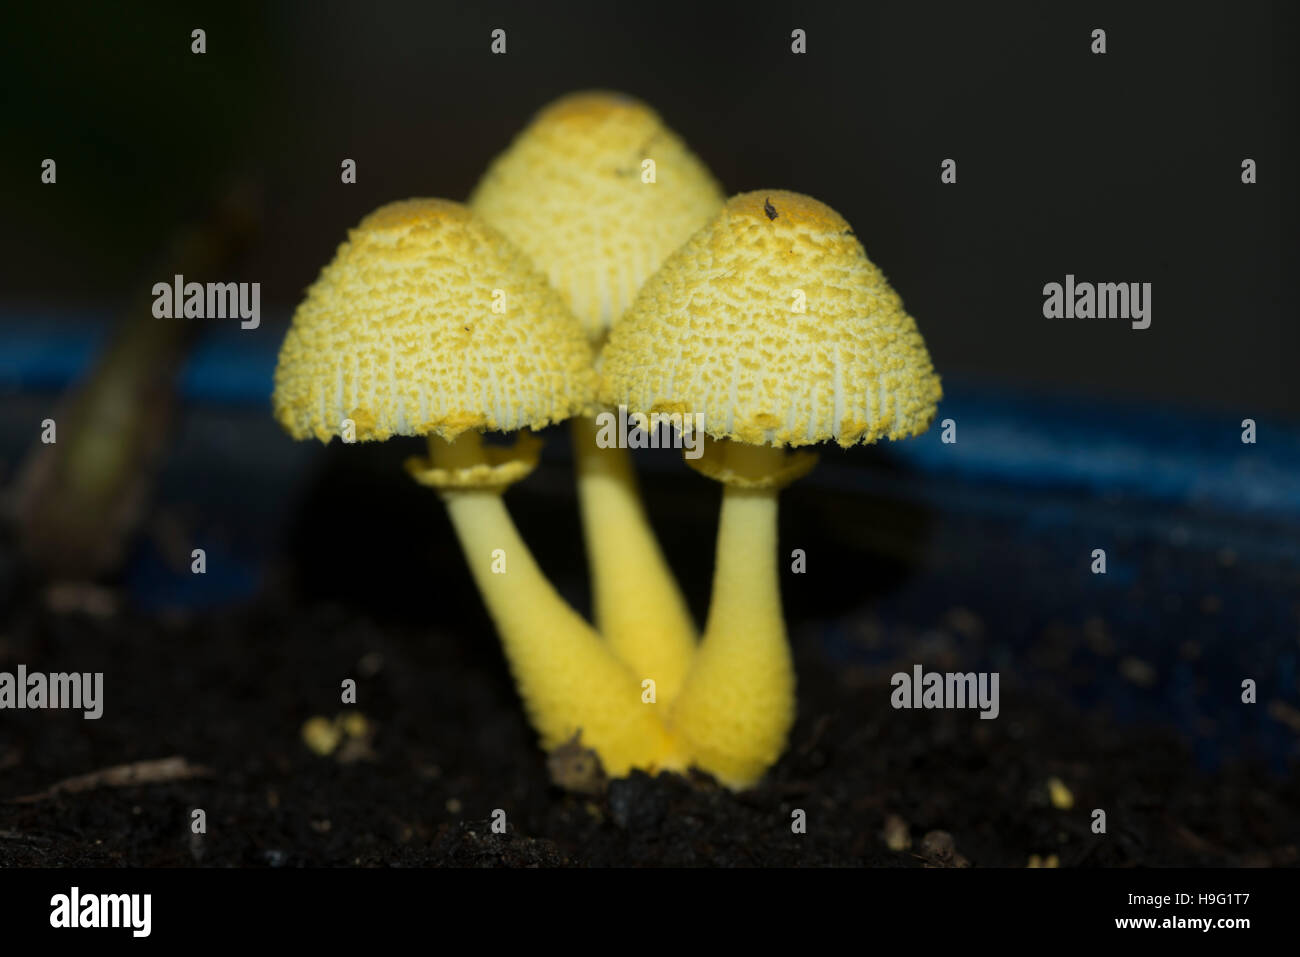 ombrellone-giallo-vaso-parasol-giallo-houseplant-fungo-leucocoprinus-birnbaumii-o-lepiota-lutea-regno-unito-h9g1t7.jpg